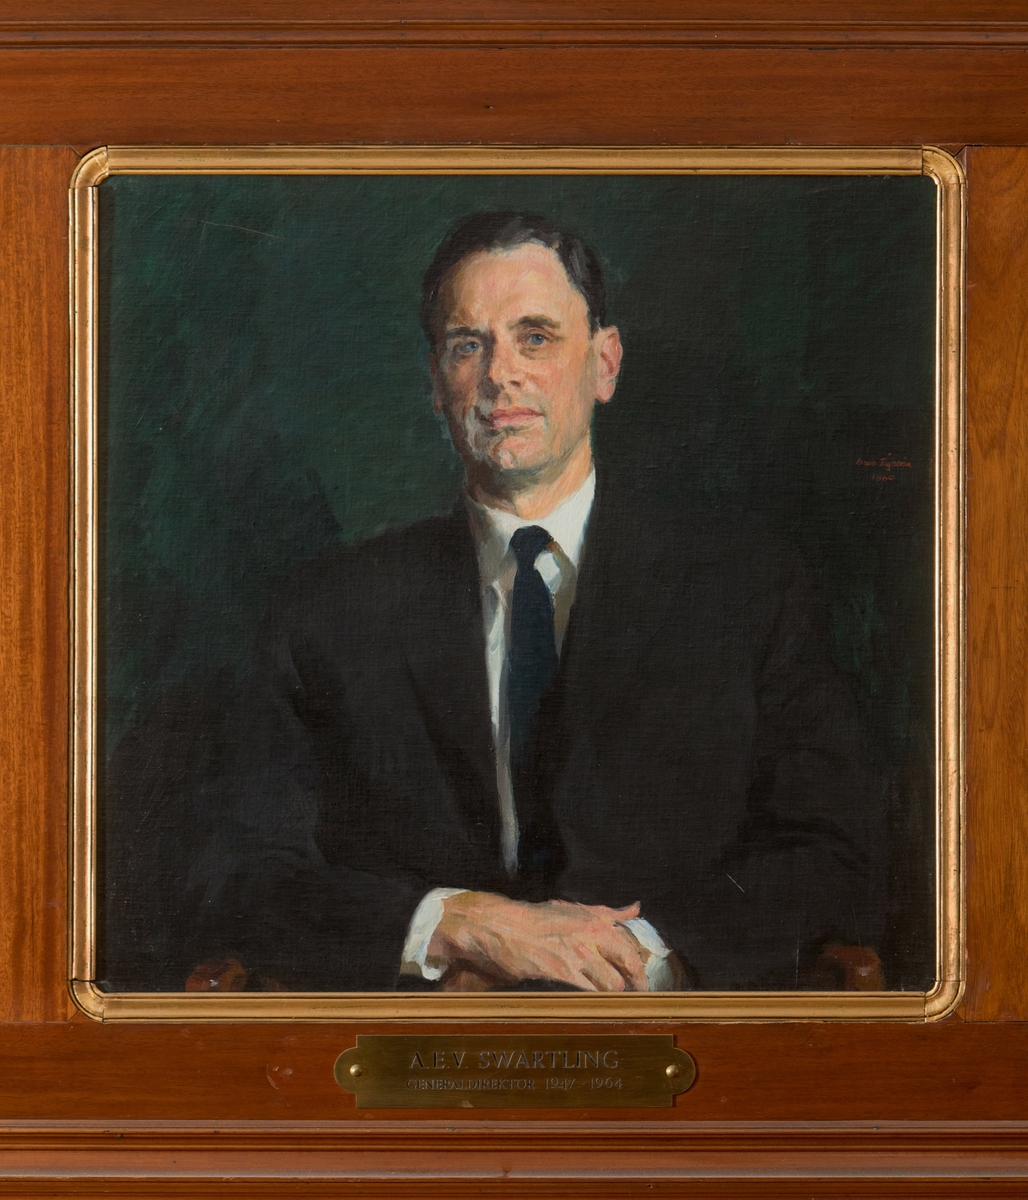 Porträtt i olja av generaldirektör A.E.V Swartling.

Duken är fäst på en träplatta. En mässingsskylt med text: "A.L.V. Swartling
Generaldirektör 1947-1964" tillhör.